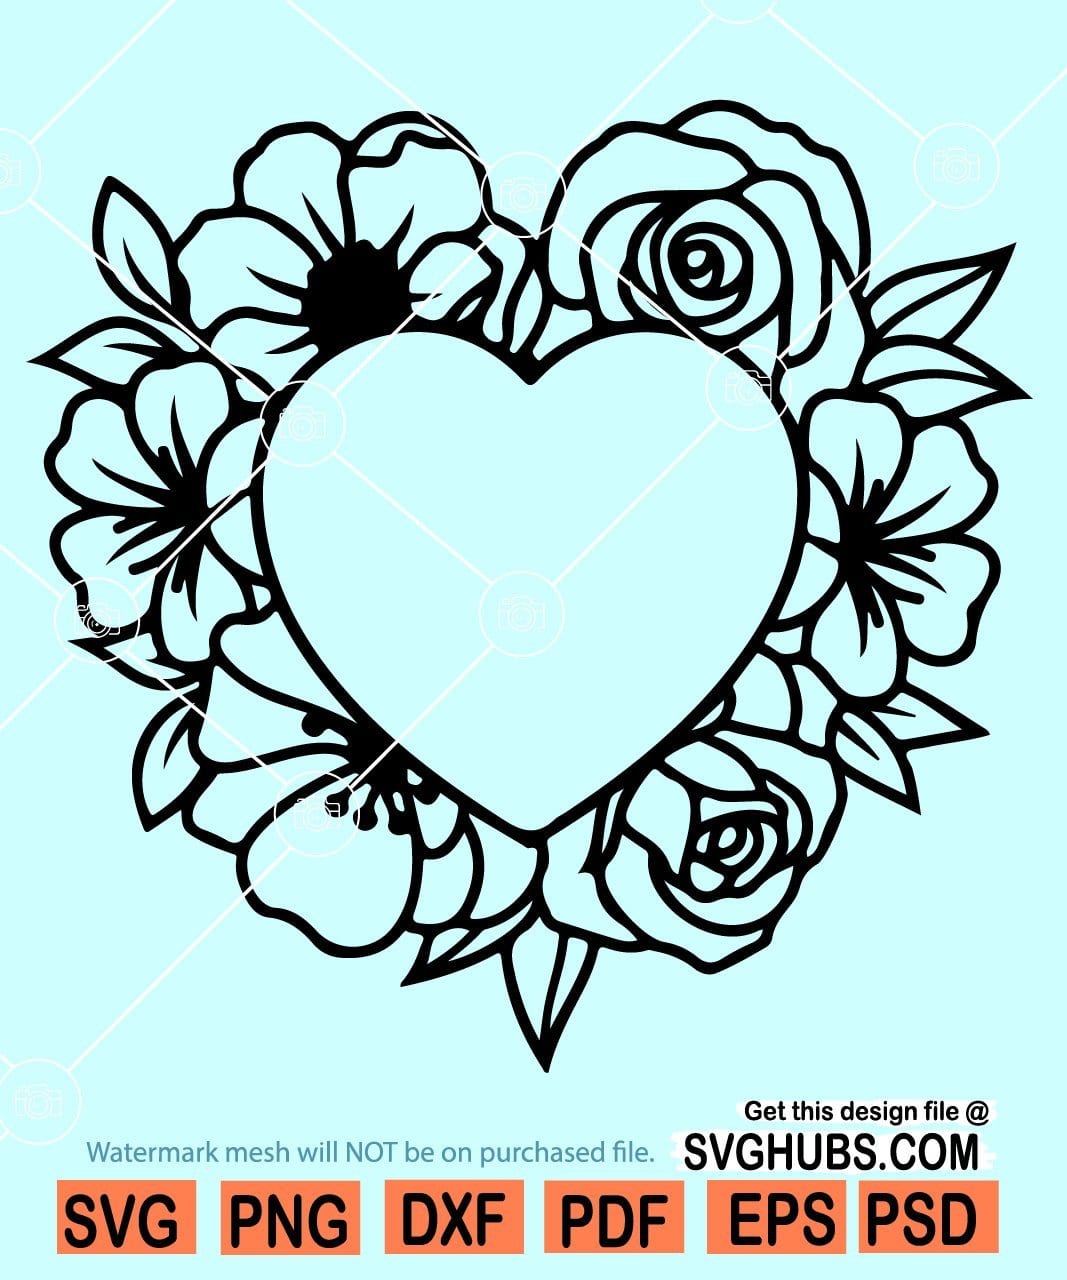 Heart shape flower frame svg, Flower frame SVG, floral frame SVG